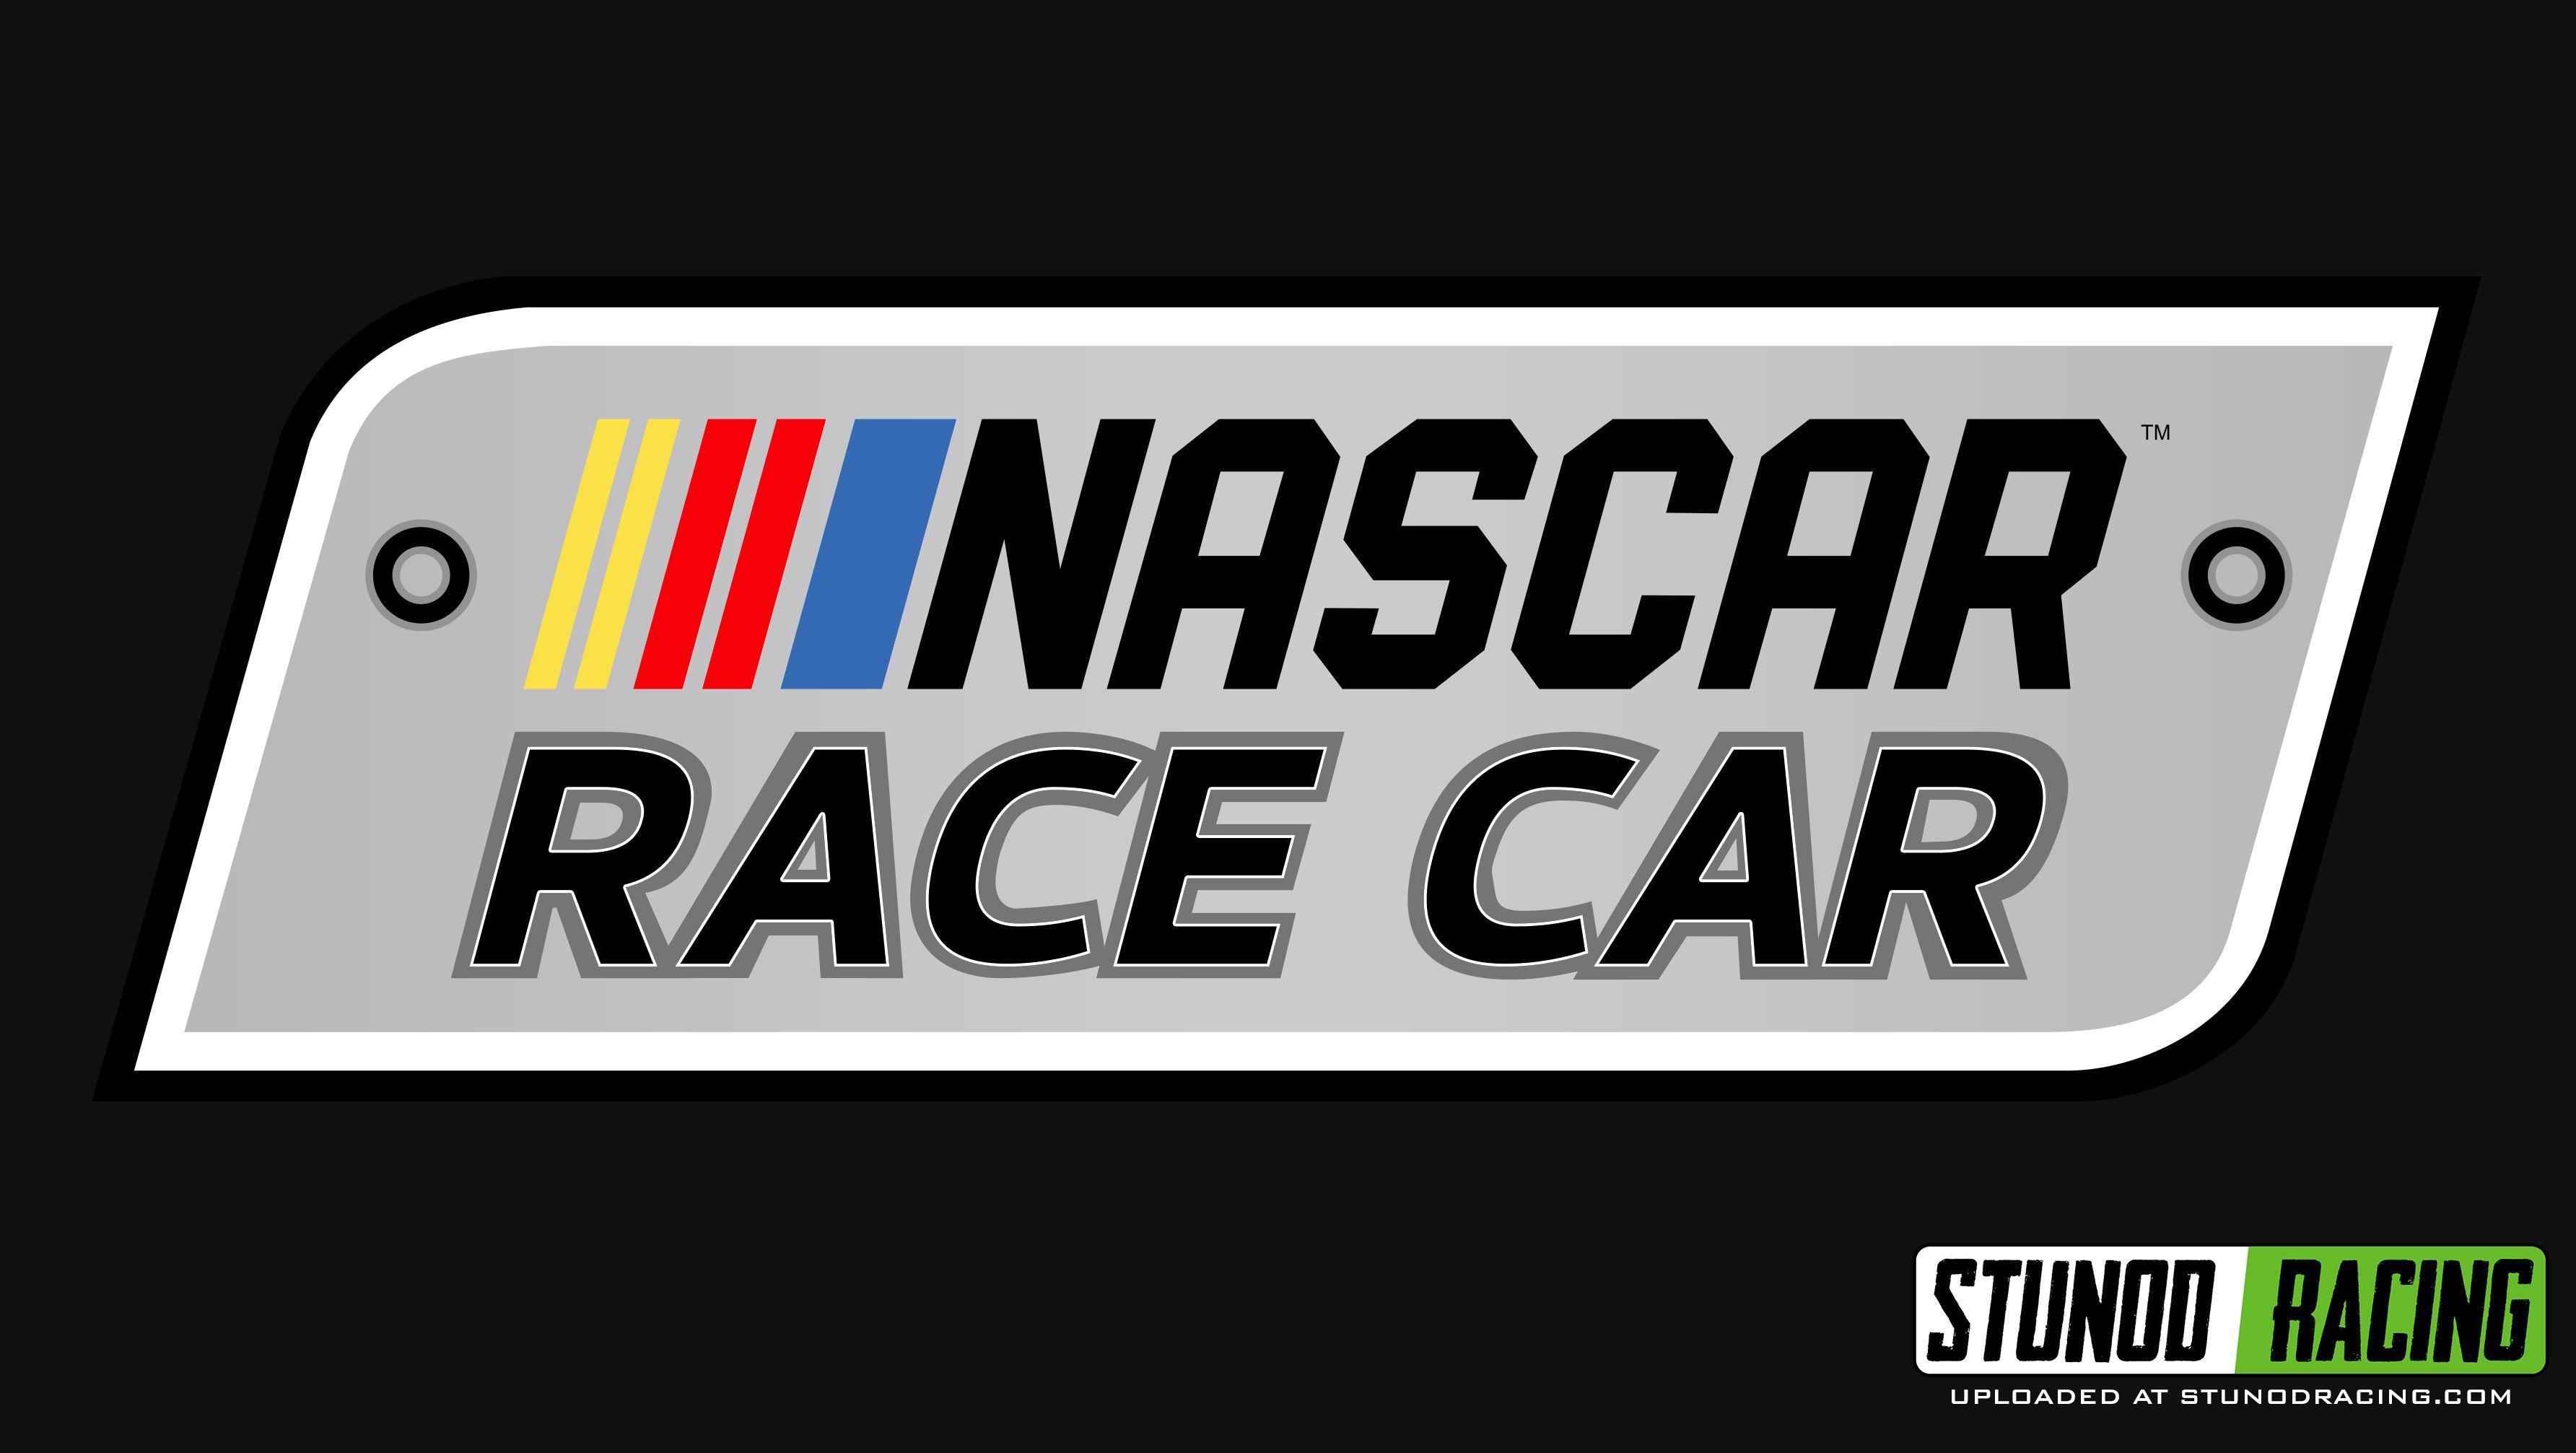 NASCAR Racing Logo - NASCAR Race Car 2017 Logo | Stunod Racing